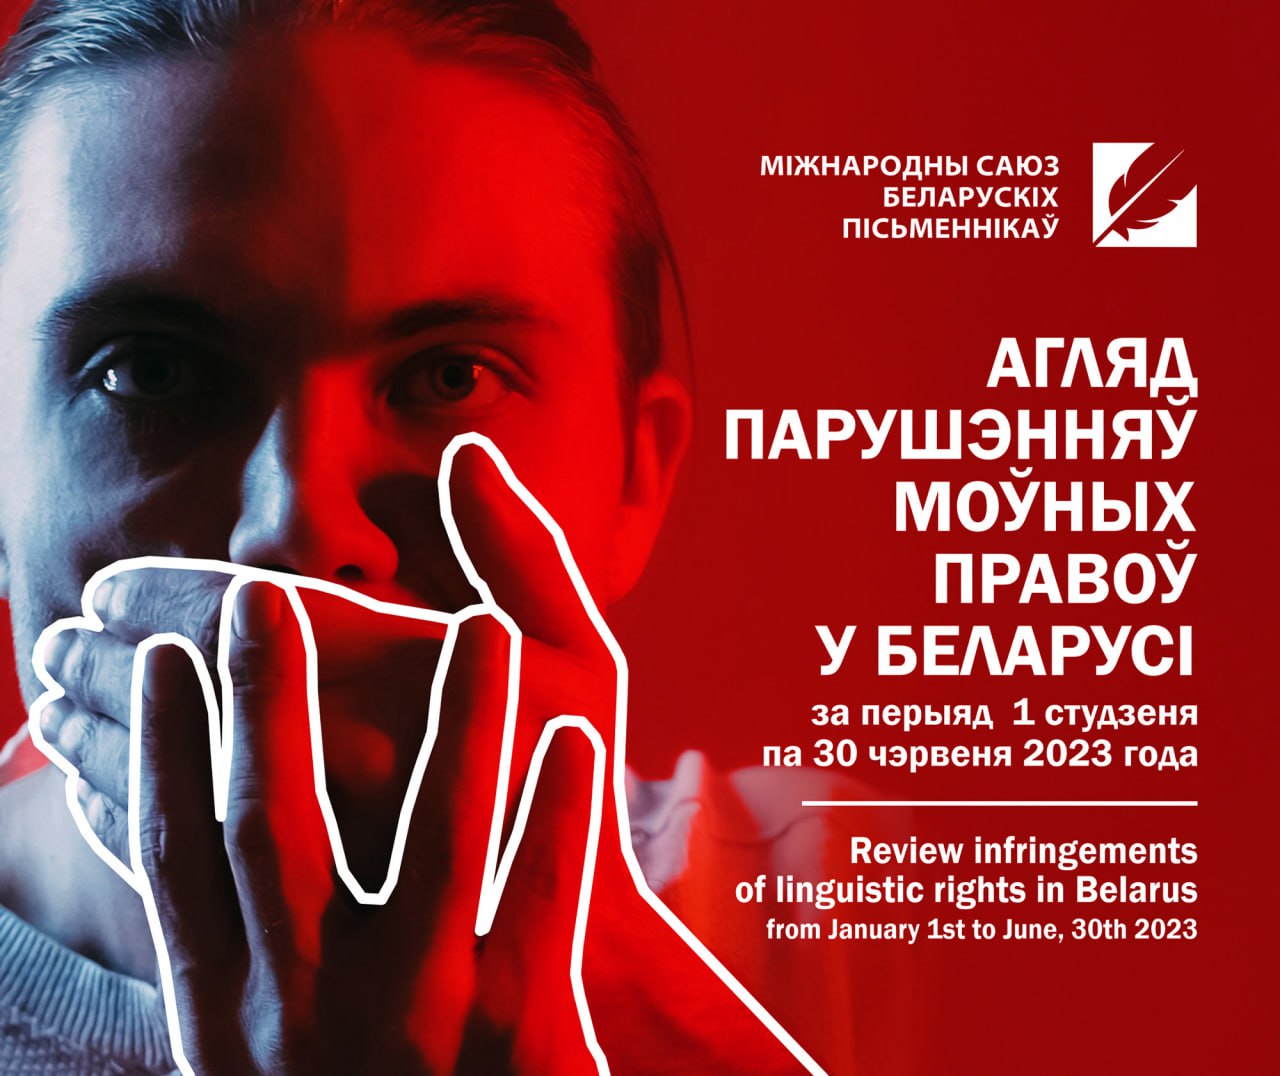 Обзор нарушений языковых прав в Беларуси  с 1 января по 30 июня 2023 года